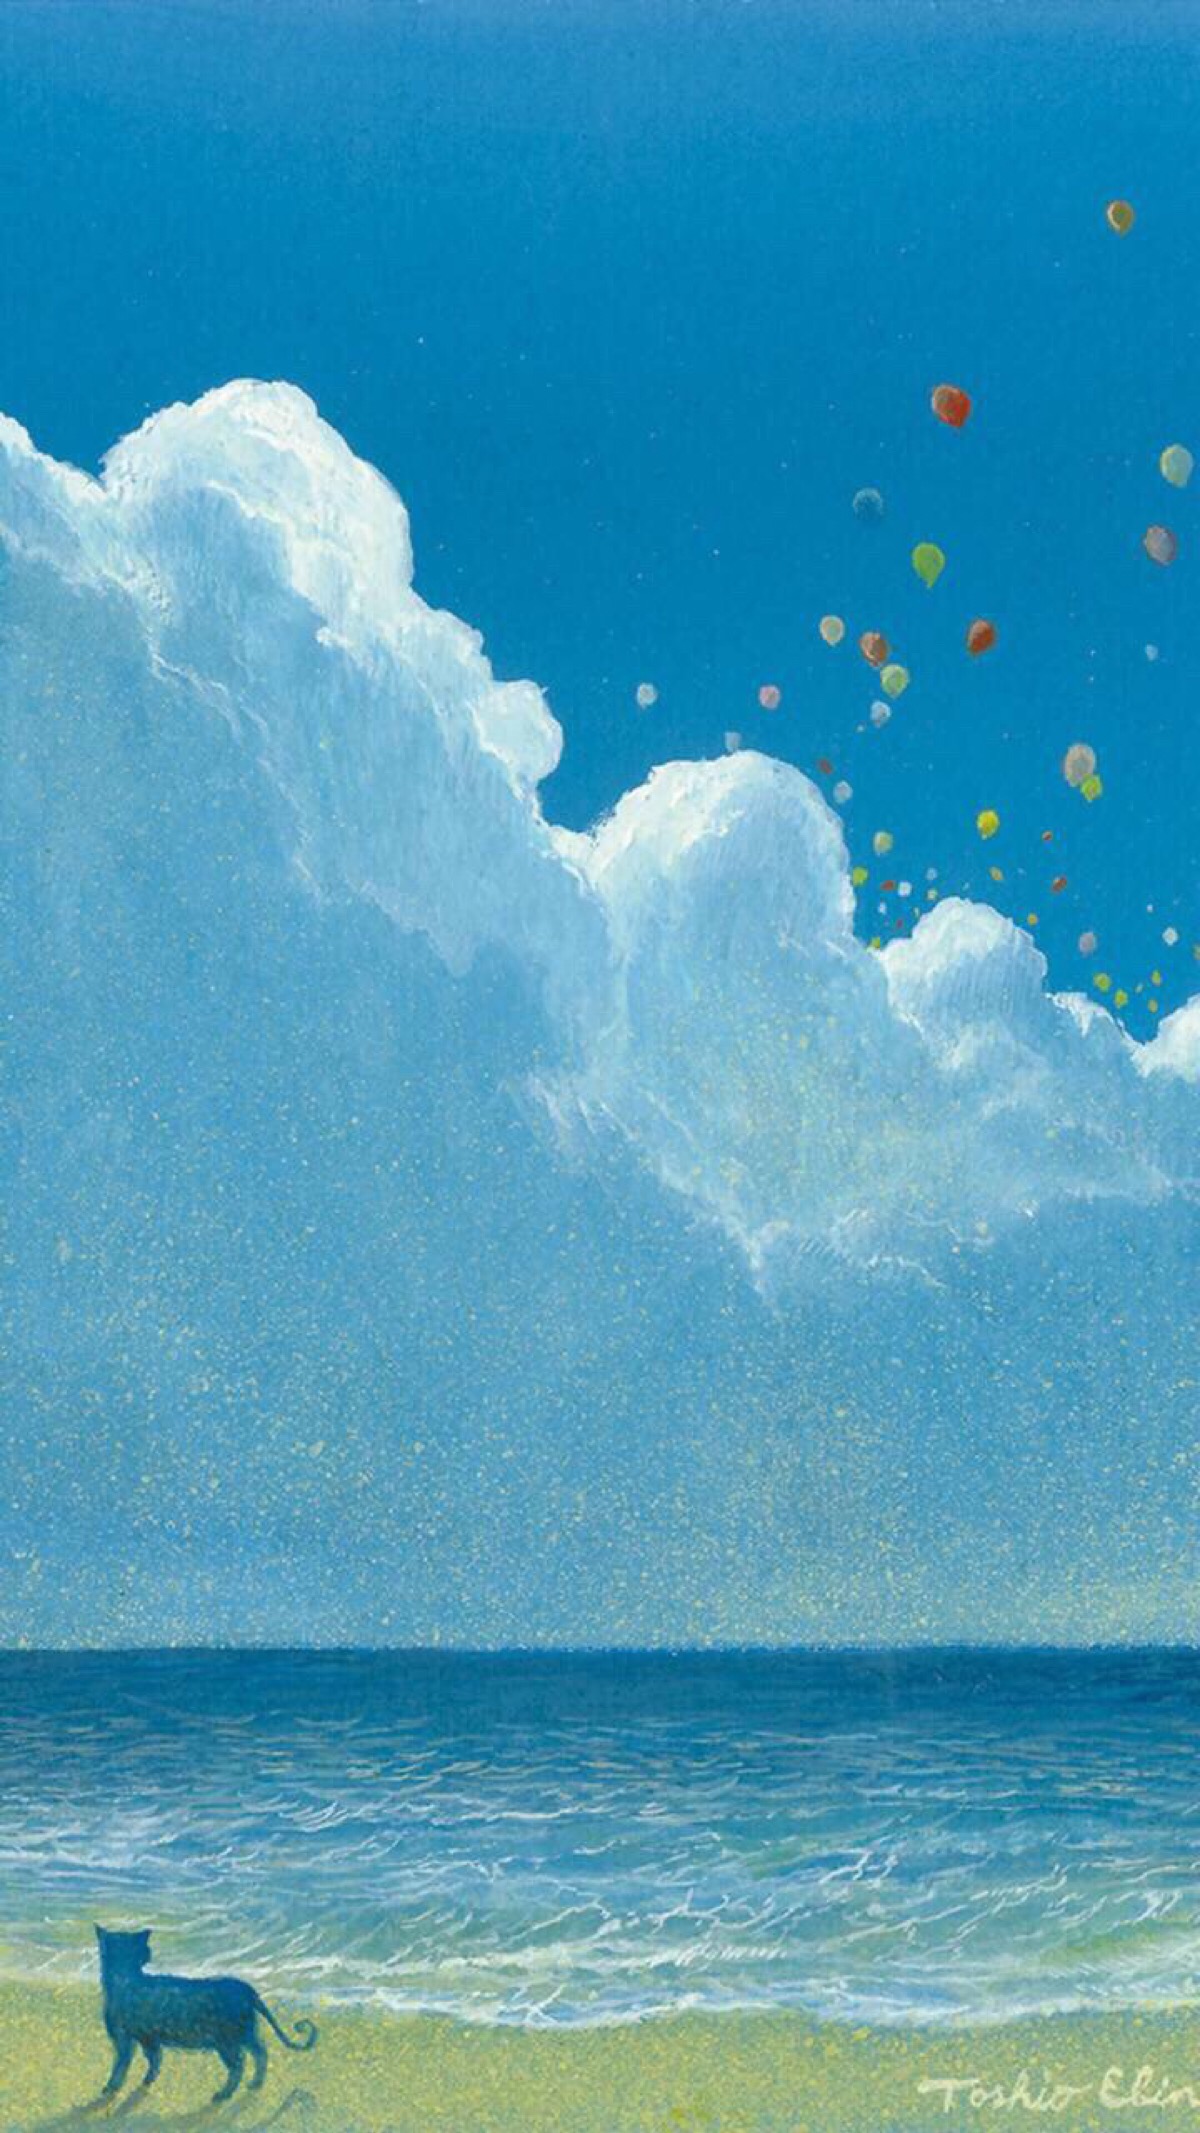 海边云朵蓝动漫手绘高清iphone壁纸 堆糖 美图壁纸兴趣社区